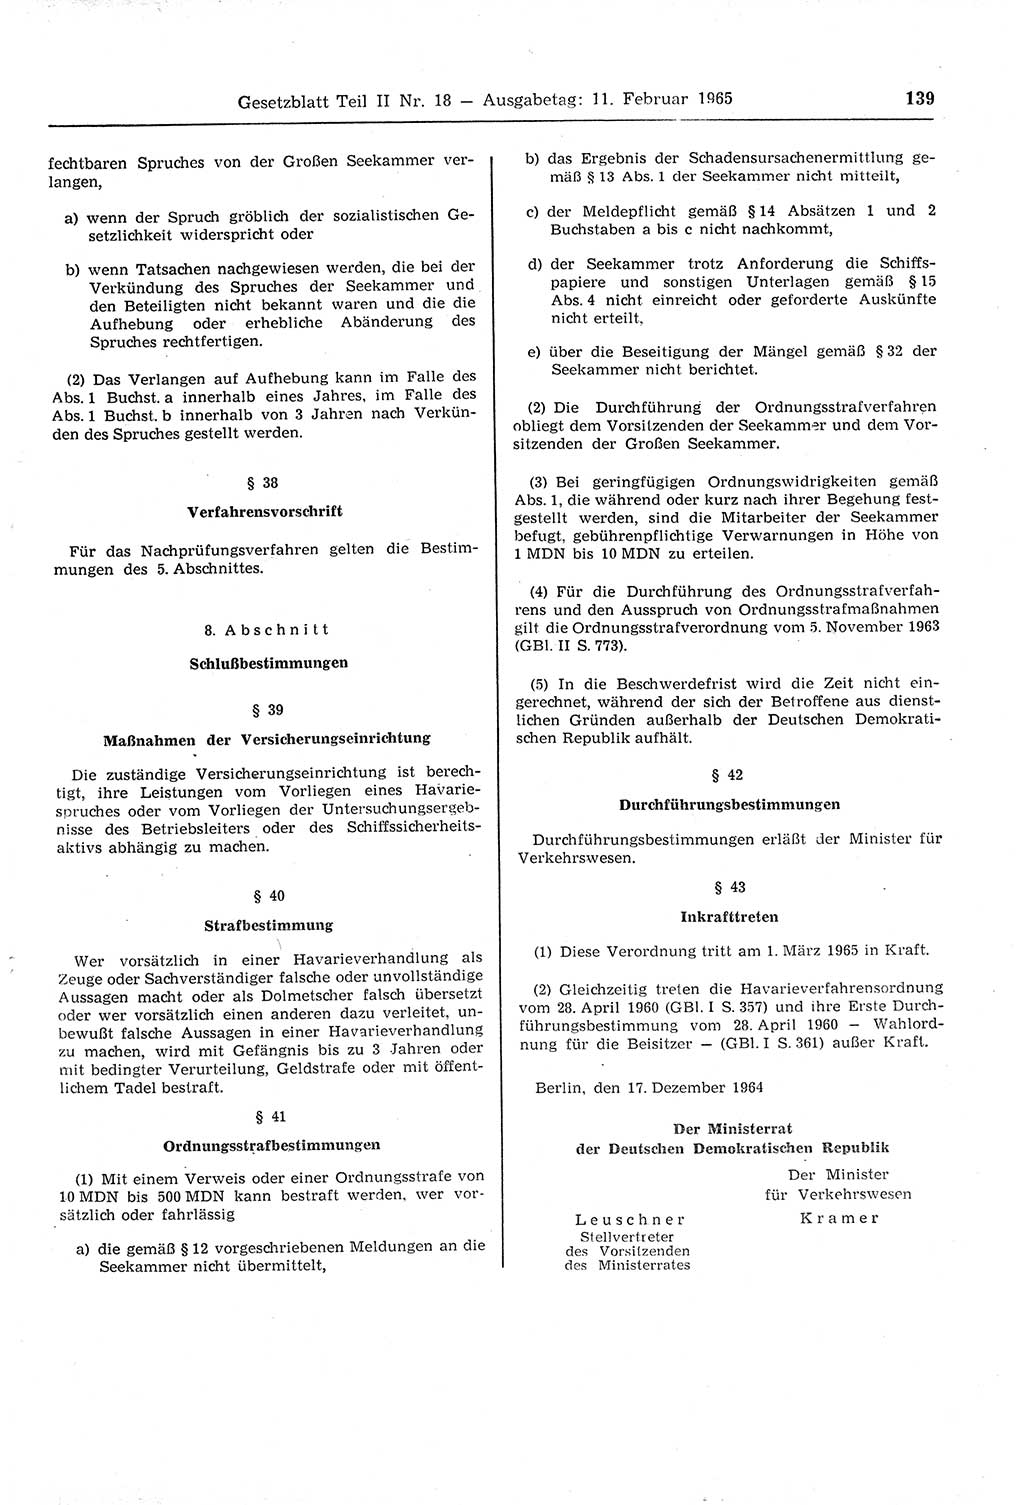 Gesetzblatt (GBl.) der Deutschen Demokratischen Republik (DDR) Teil ⅠⅠ 1965, Seite 139 (GBl. DDR ⅠⅠ 1965, S. 139)